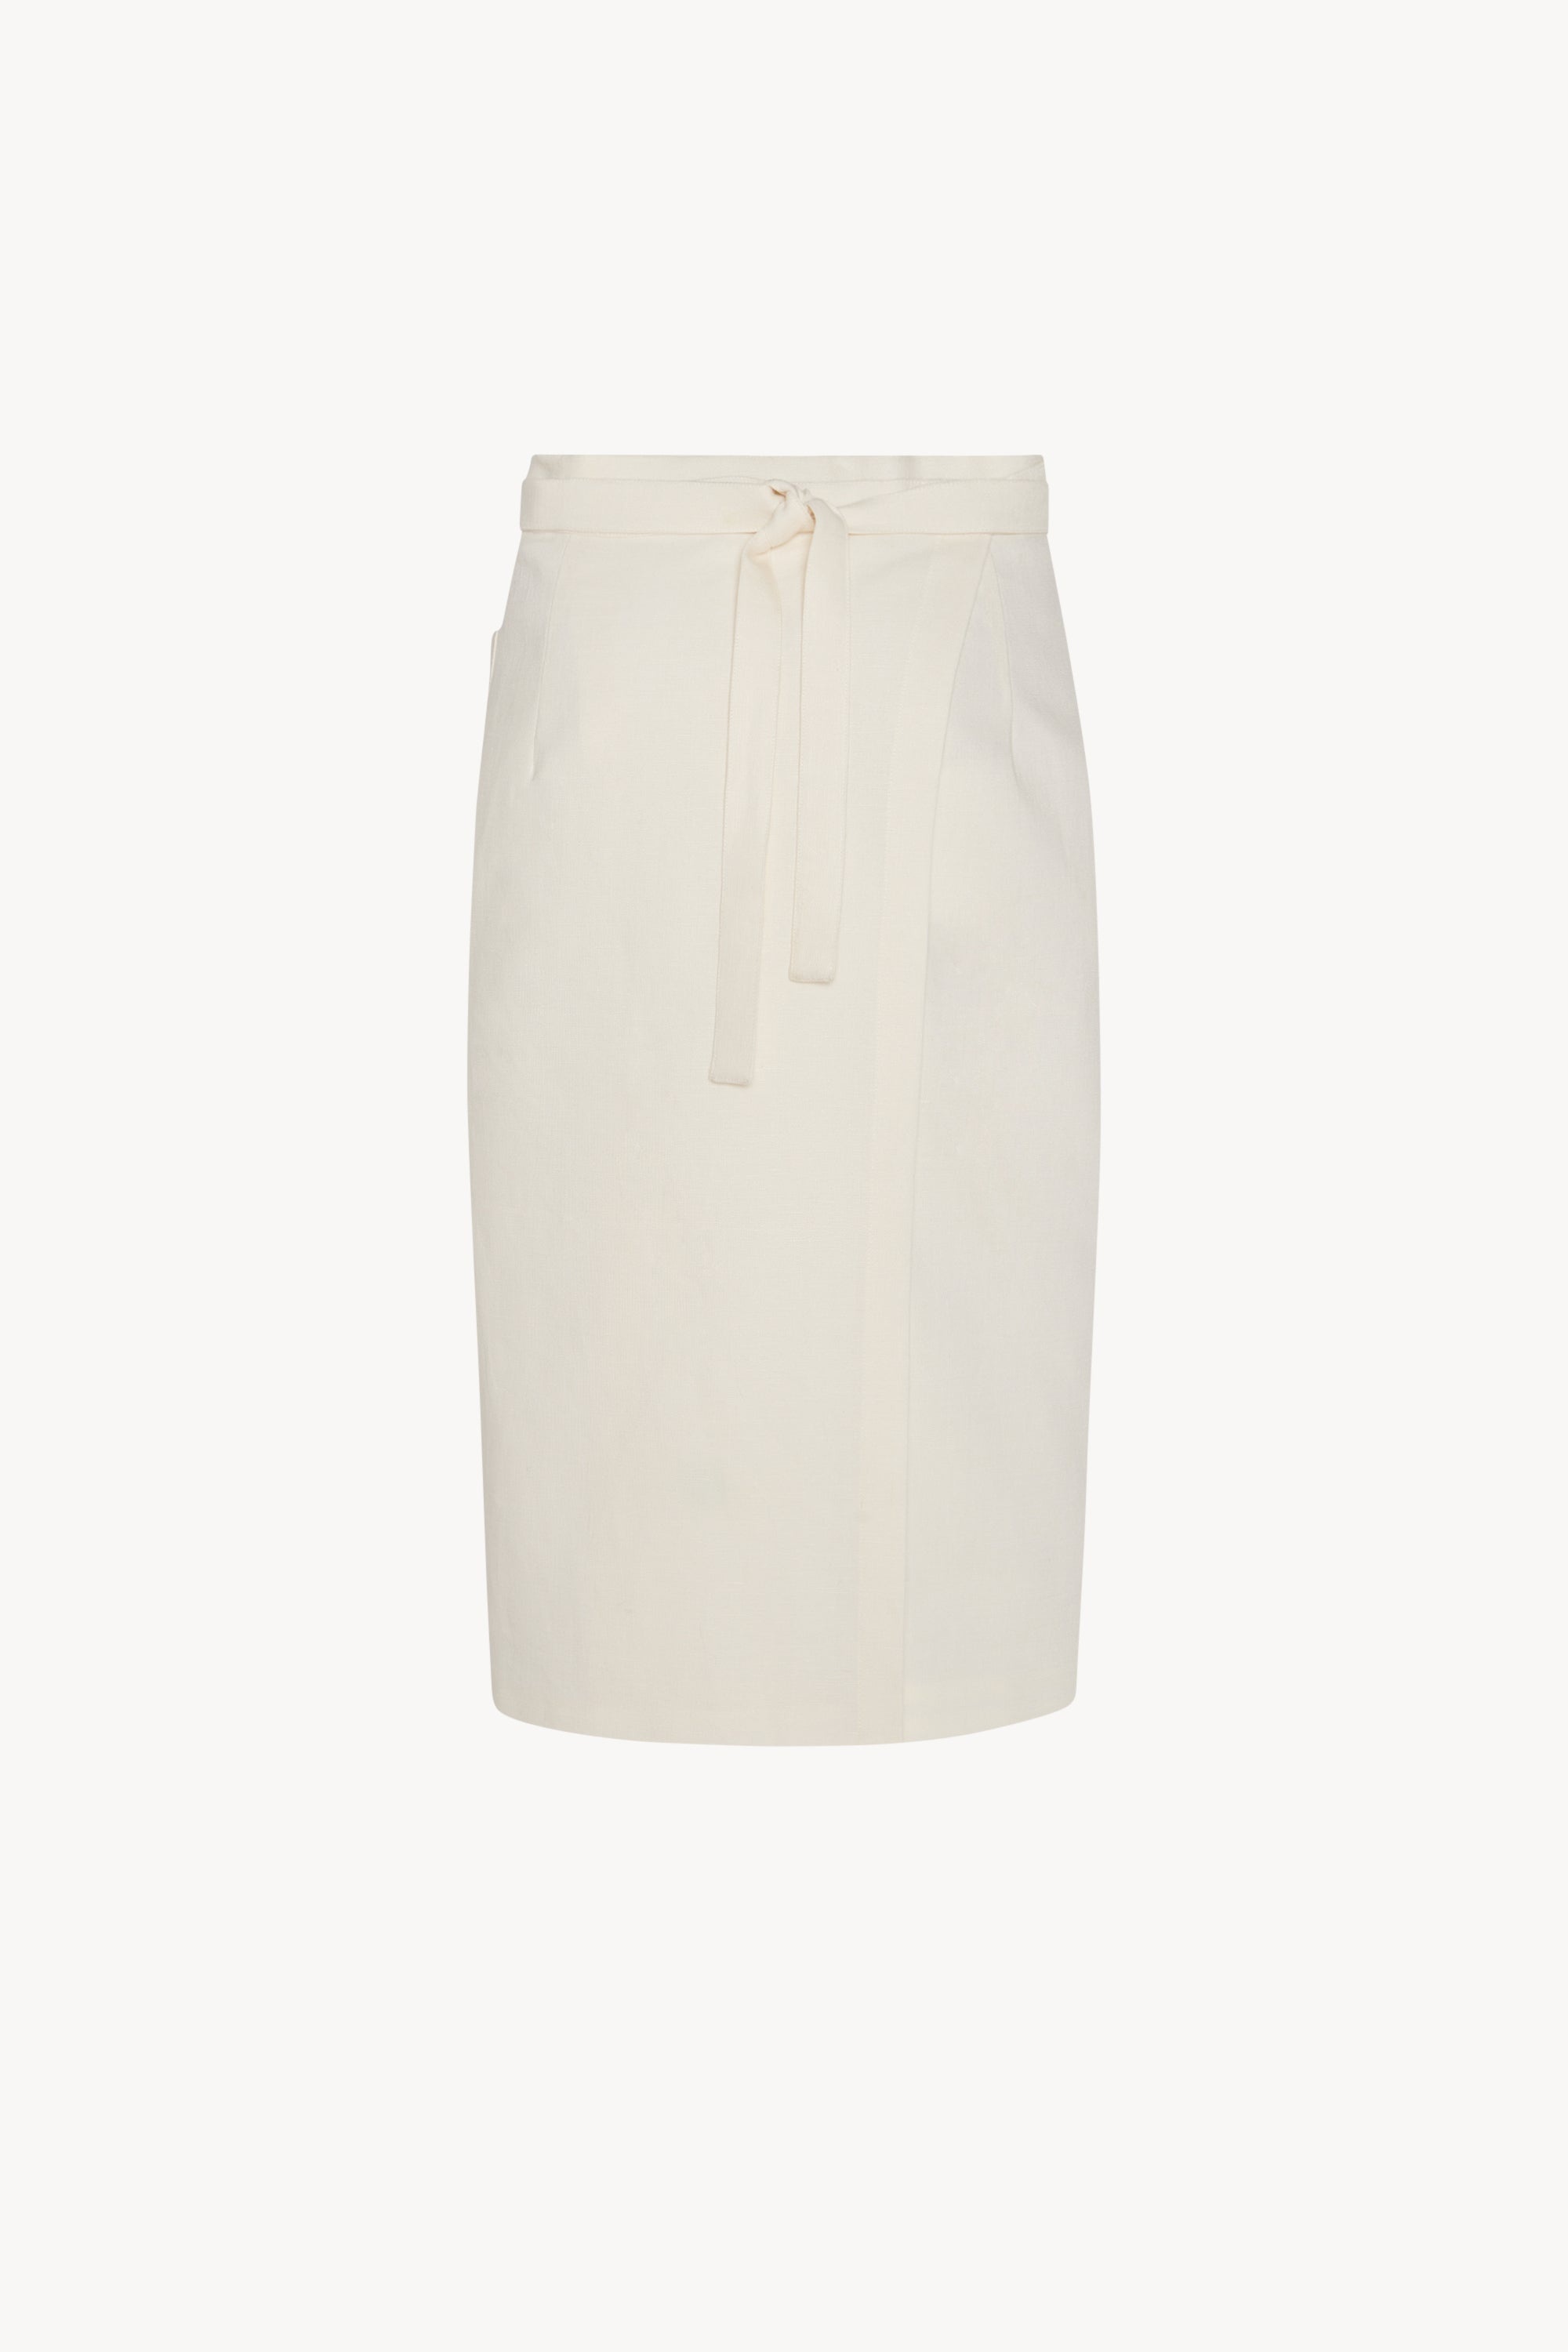 Lulli Skirt in Linen - 2